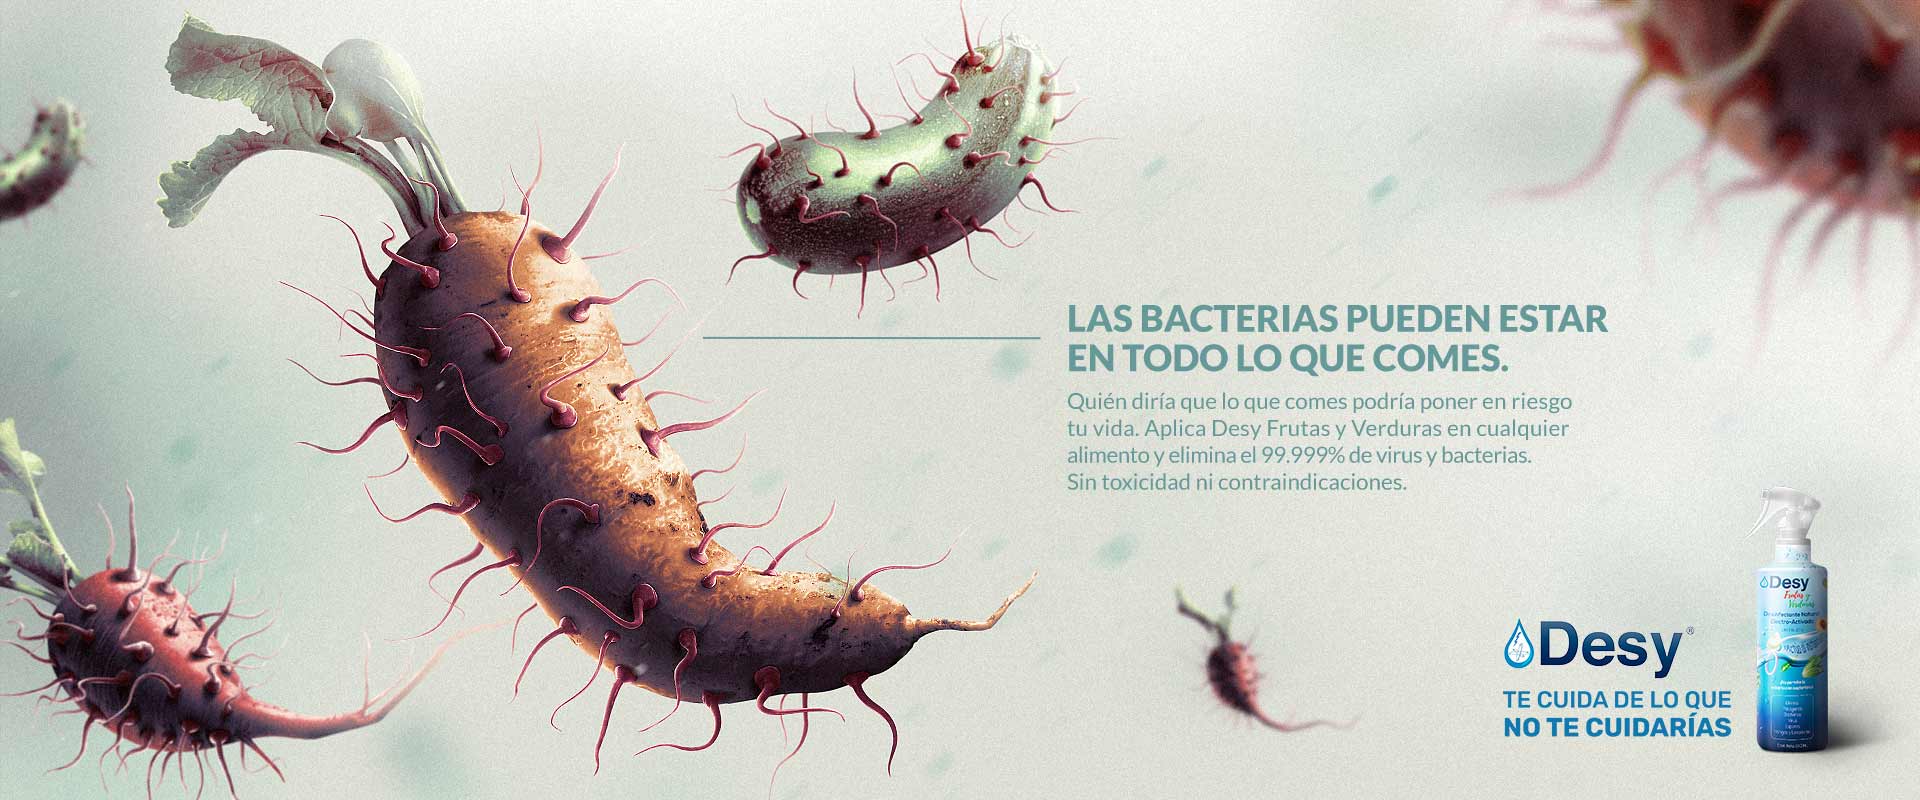 Las bacterias pueden estar en todo lo que comes